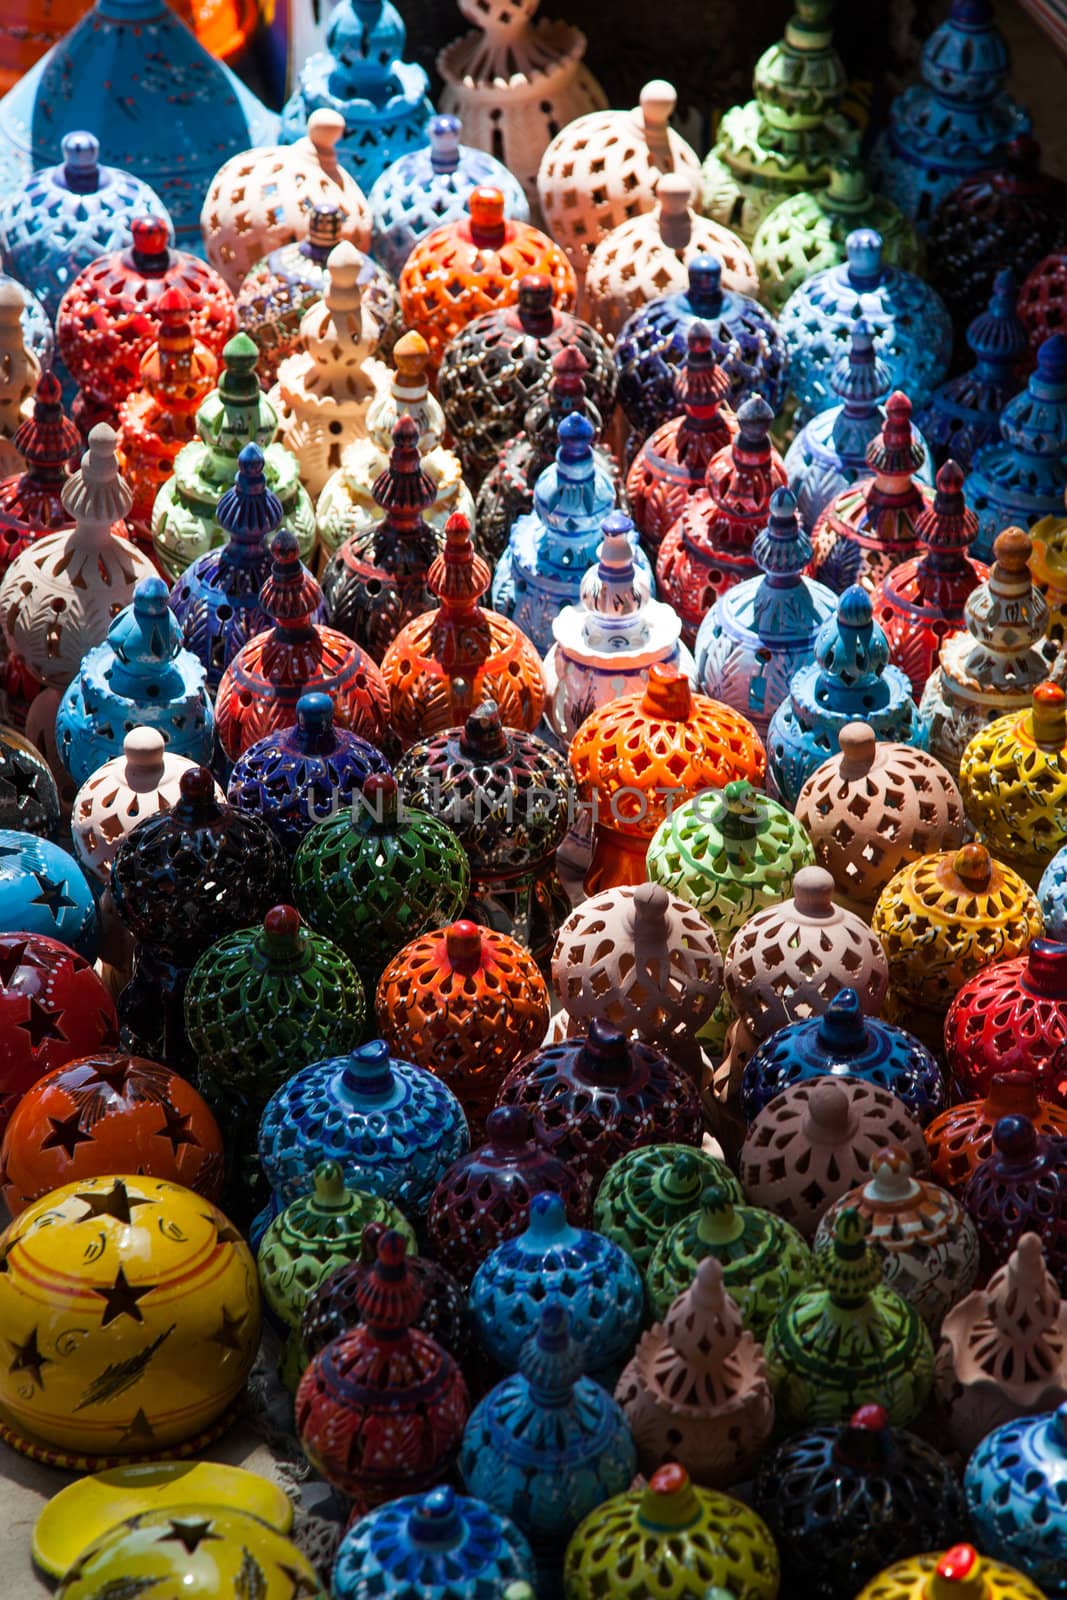 Tunisian Lamps at the Market in Djerba Tunisia detail